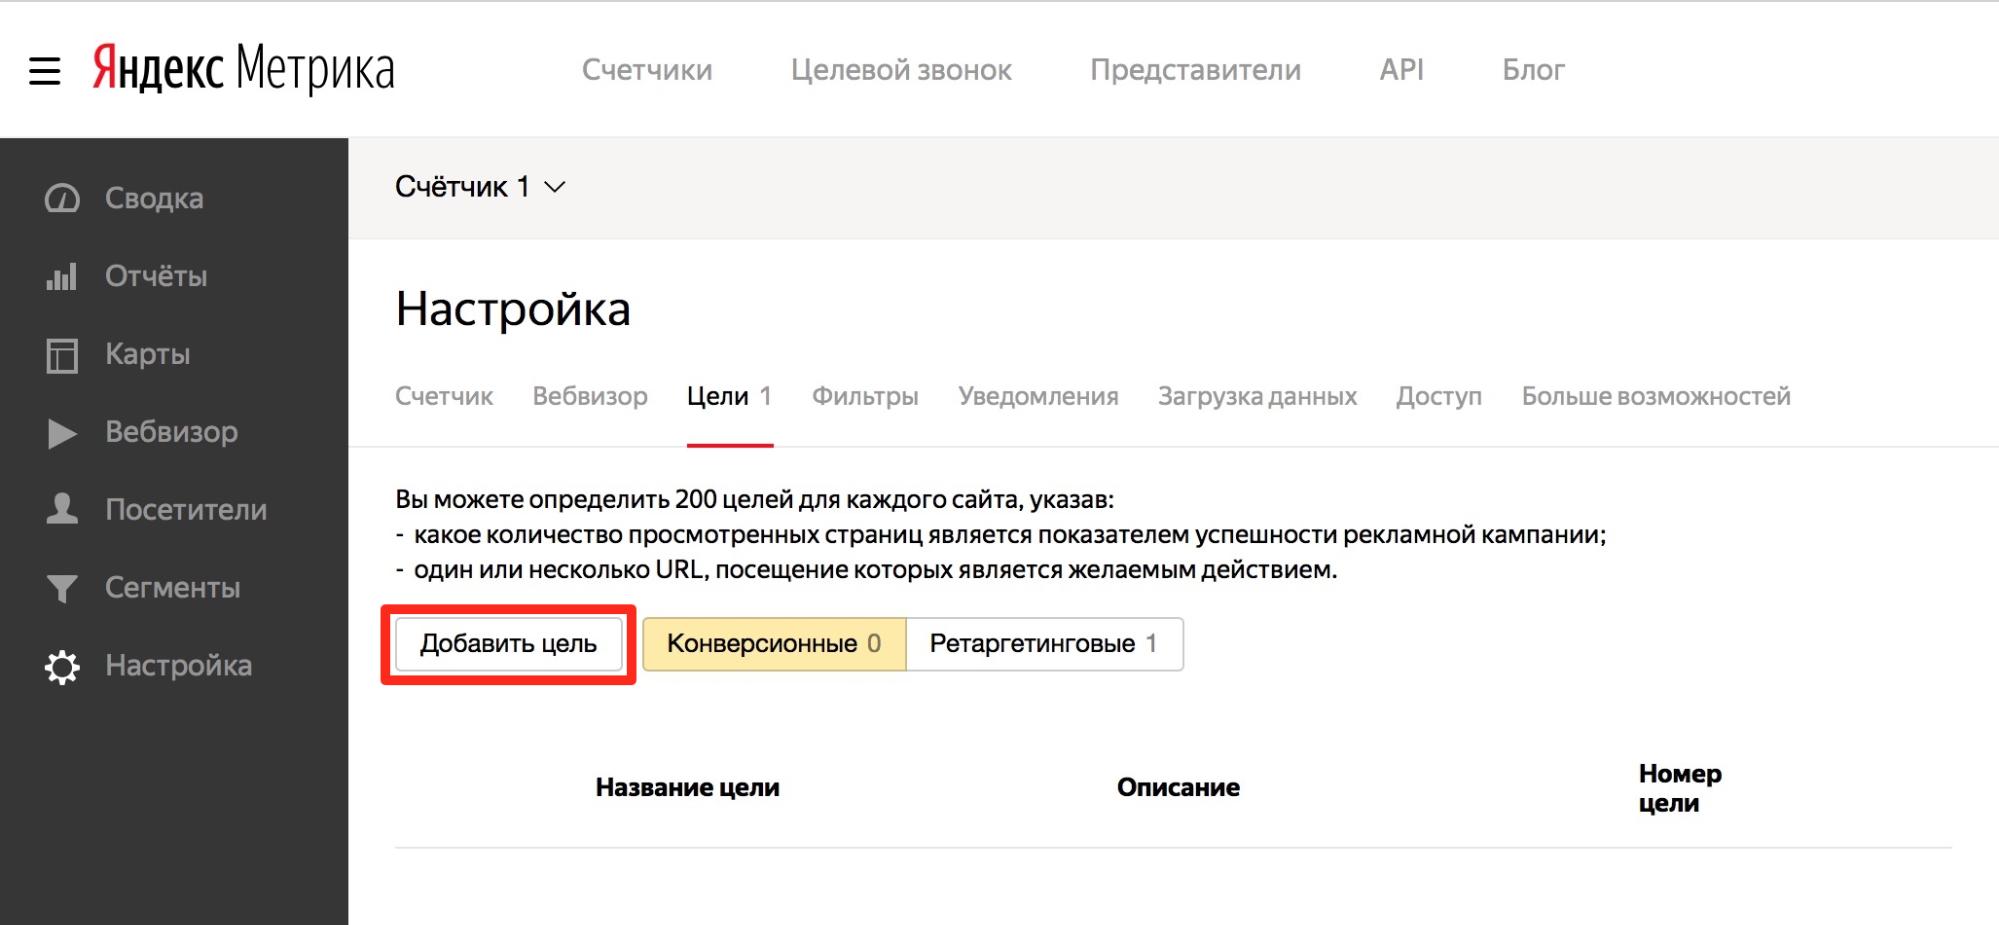 Цели Яндекса